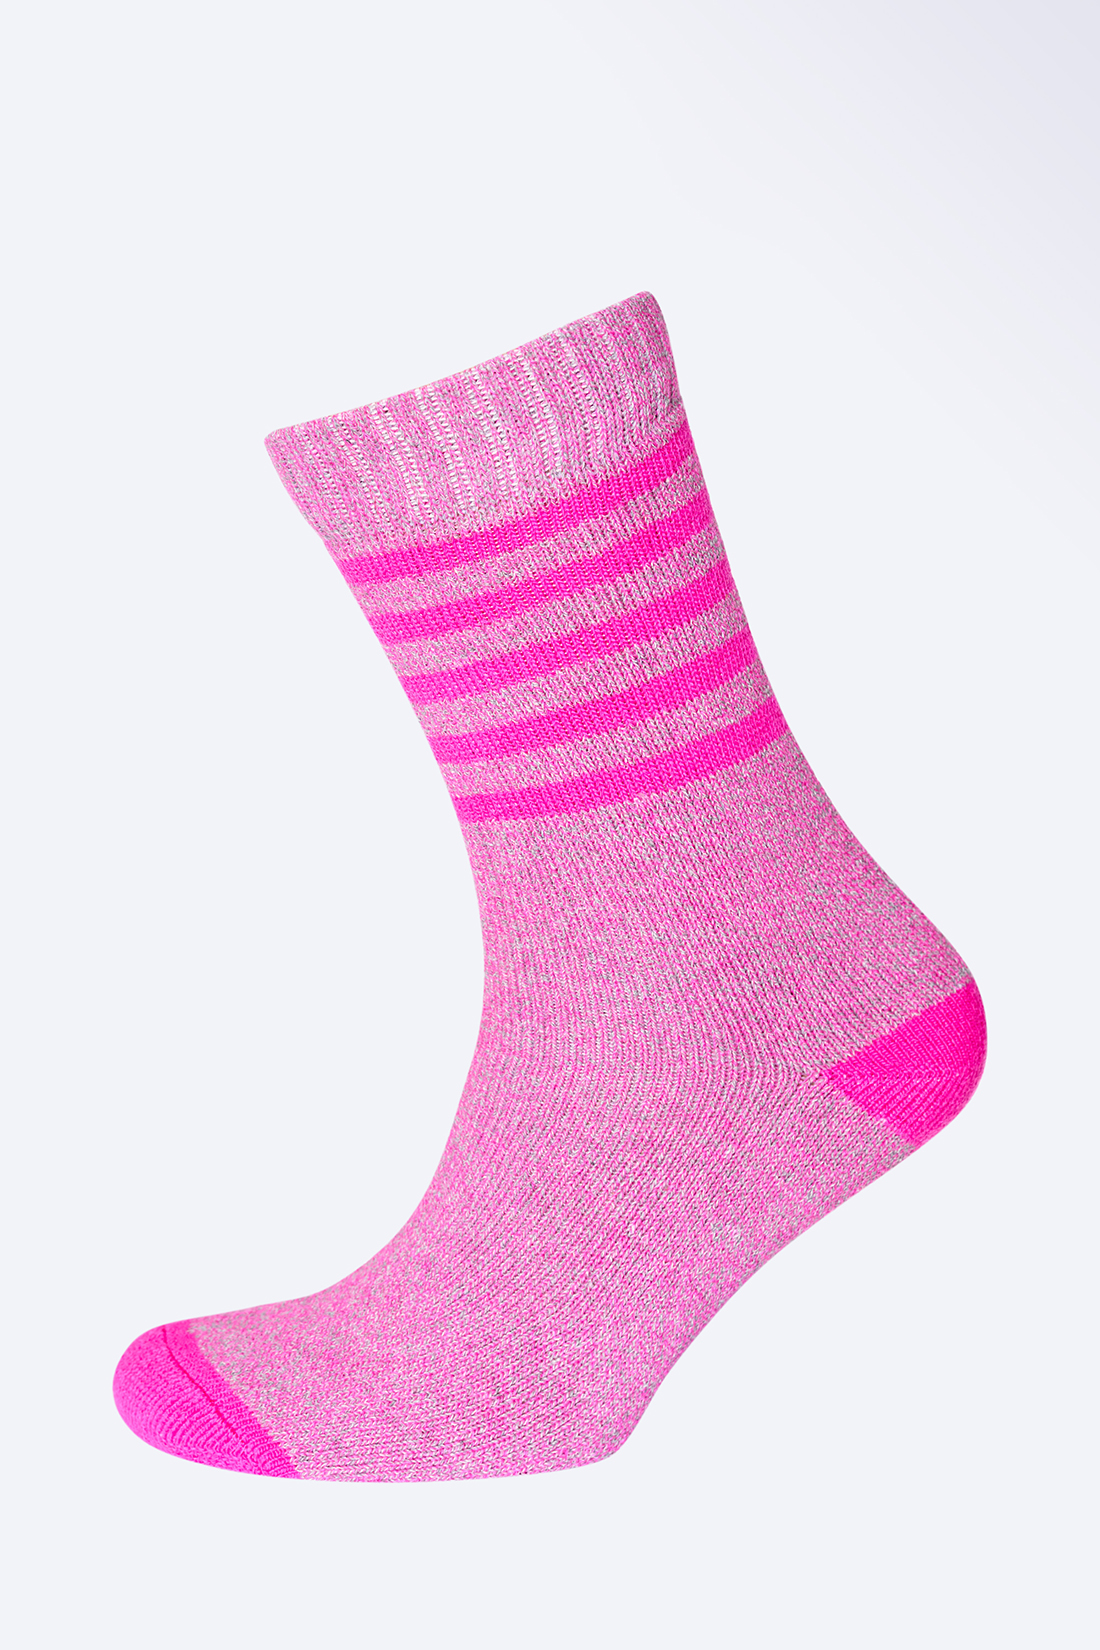 Махровые носки с полосками (арт. baon B399510), размер 35/37, цвет розовый